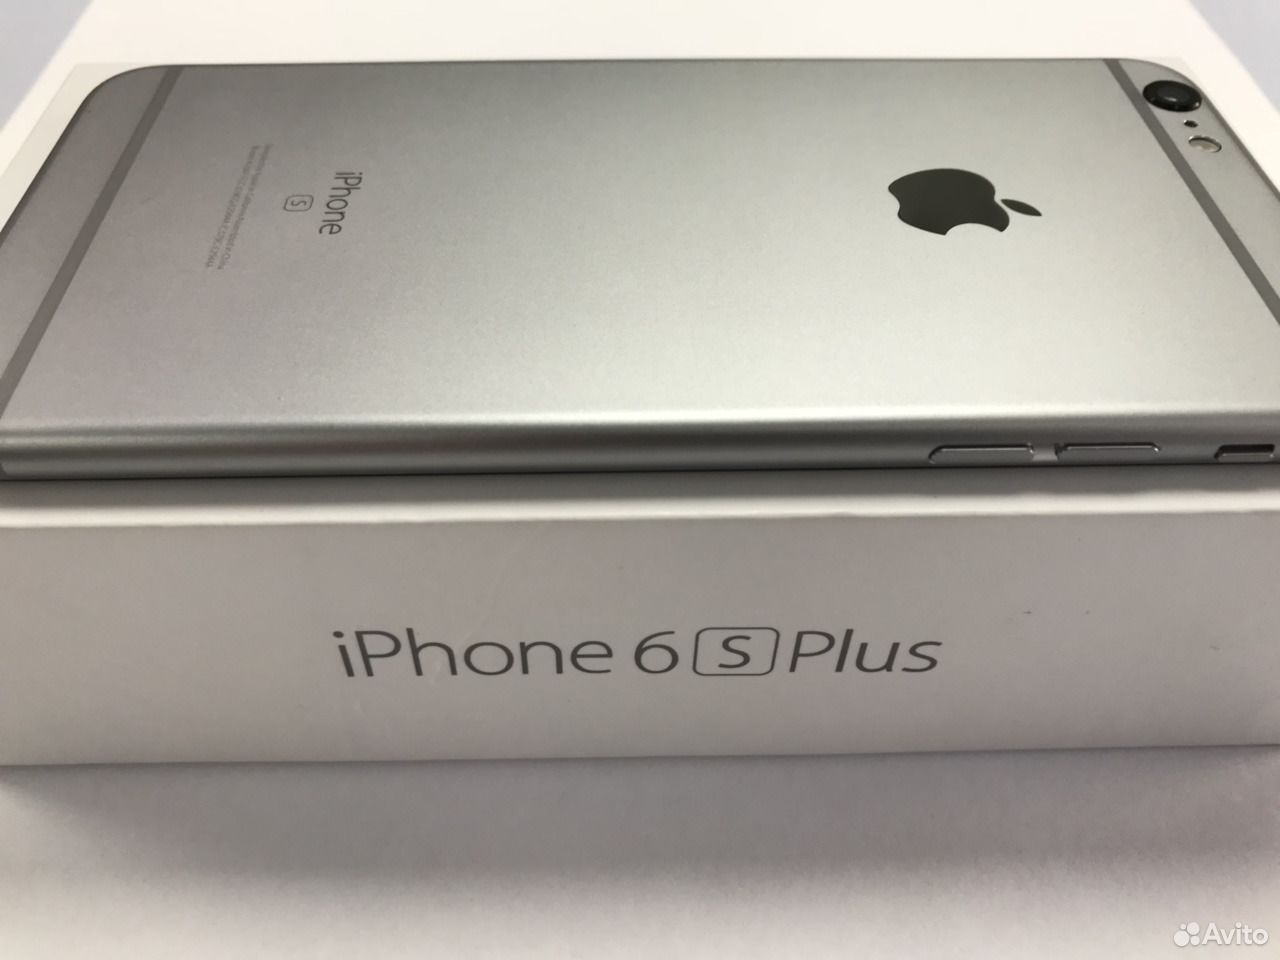 Авито братск айфон. Iphone 6s Plus Space Gray. Iphone 6s Plus авито. Iphone 6 Plus авито. Плюс новый в Усть Куте iphone 6s +.